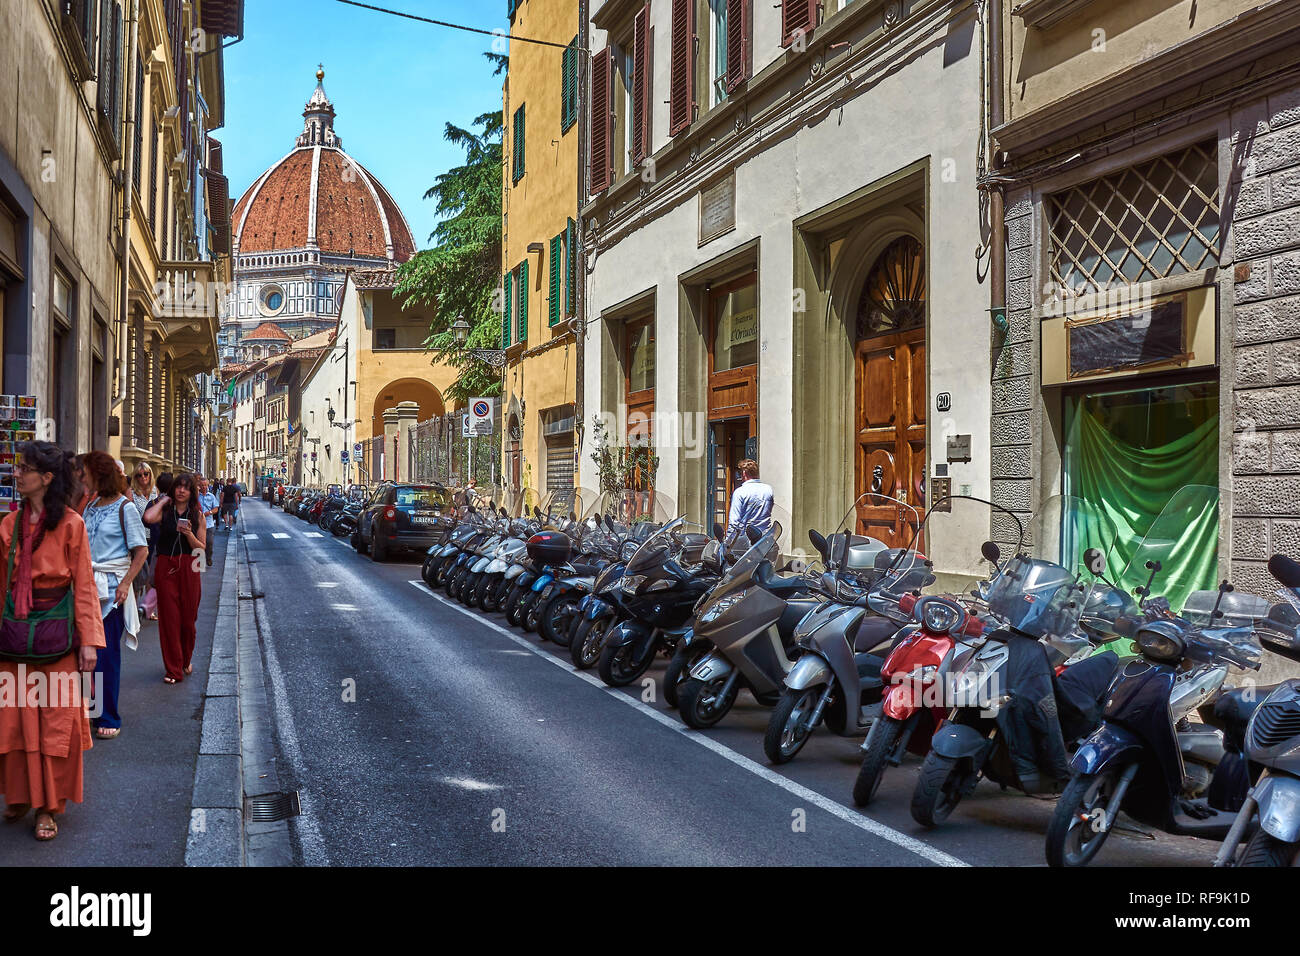 Les motos en stationnement sur rue étroite à Florence, en Italie, et entouré de vieux appartements, avec la Cathédrale de Santa Maria del Fiore dans le backgroun Banque D'Images